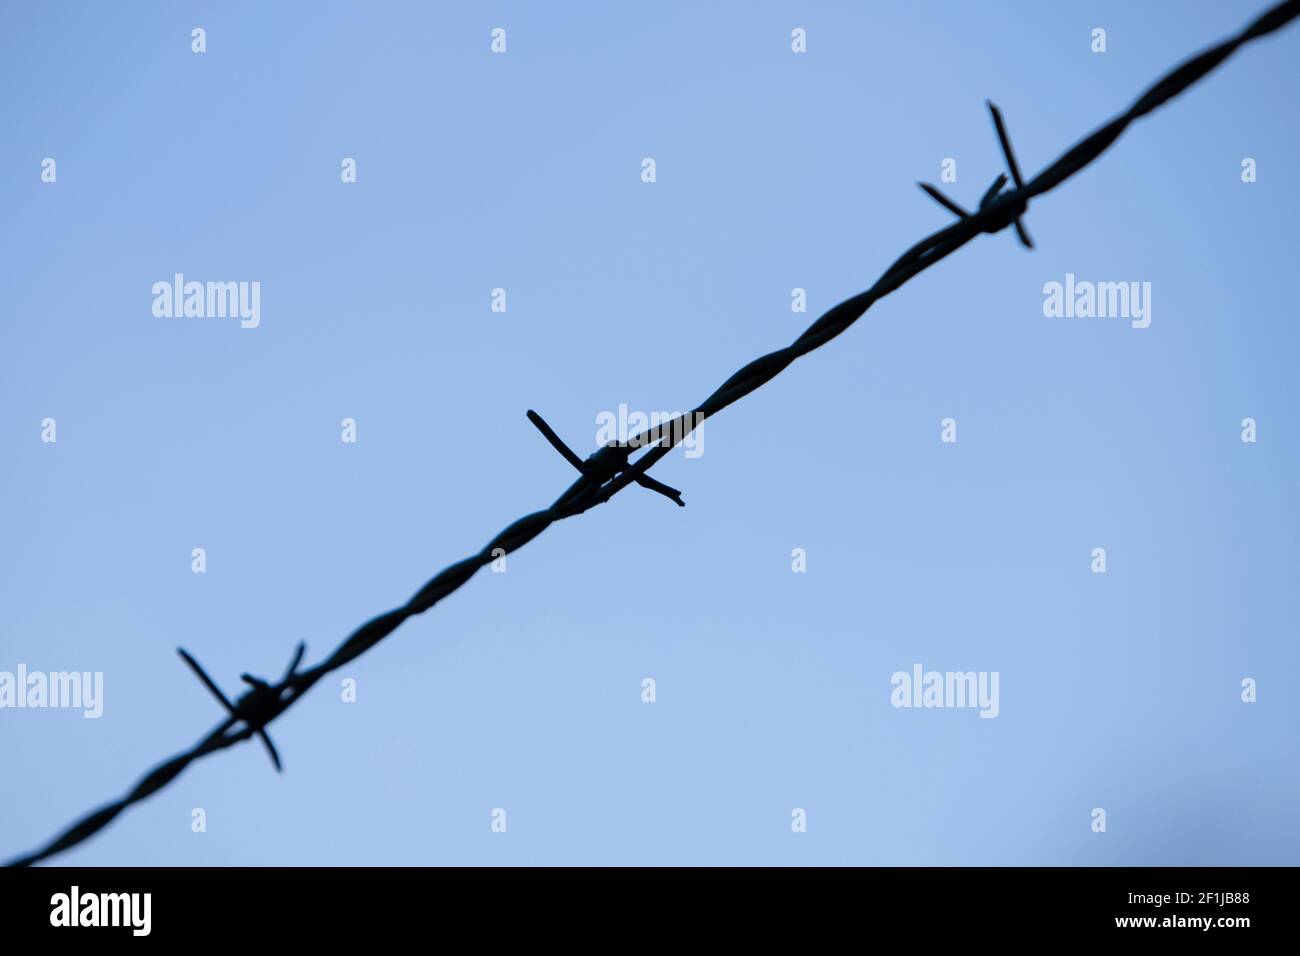 Nahaufnahme von drei Spitzen eines Stahldrahtes, blauer Himmel als Hintergrund Stockfoto